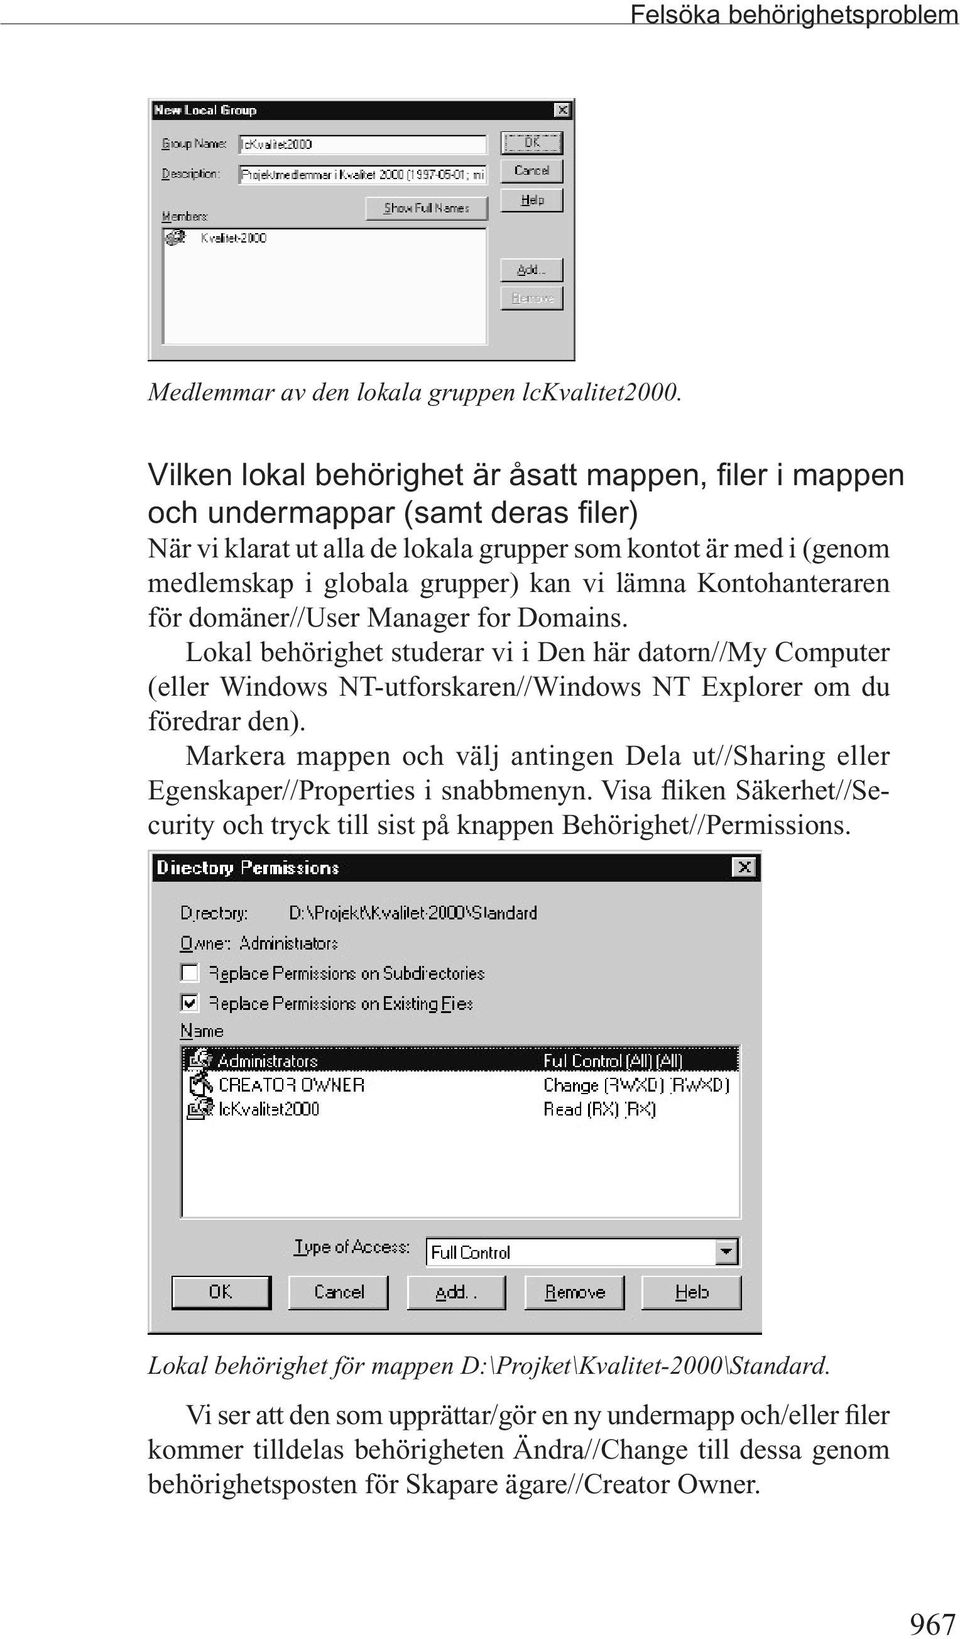 lämna Kontohanteraren för domäner//user Manager for Domains. Lokal behörighet studerar vi i Den här datorn//my Computer (eller Windows NT-utforskaren//Windows NT Explorer om du föredrar den).